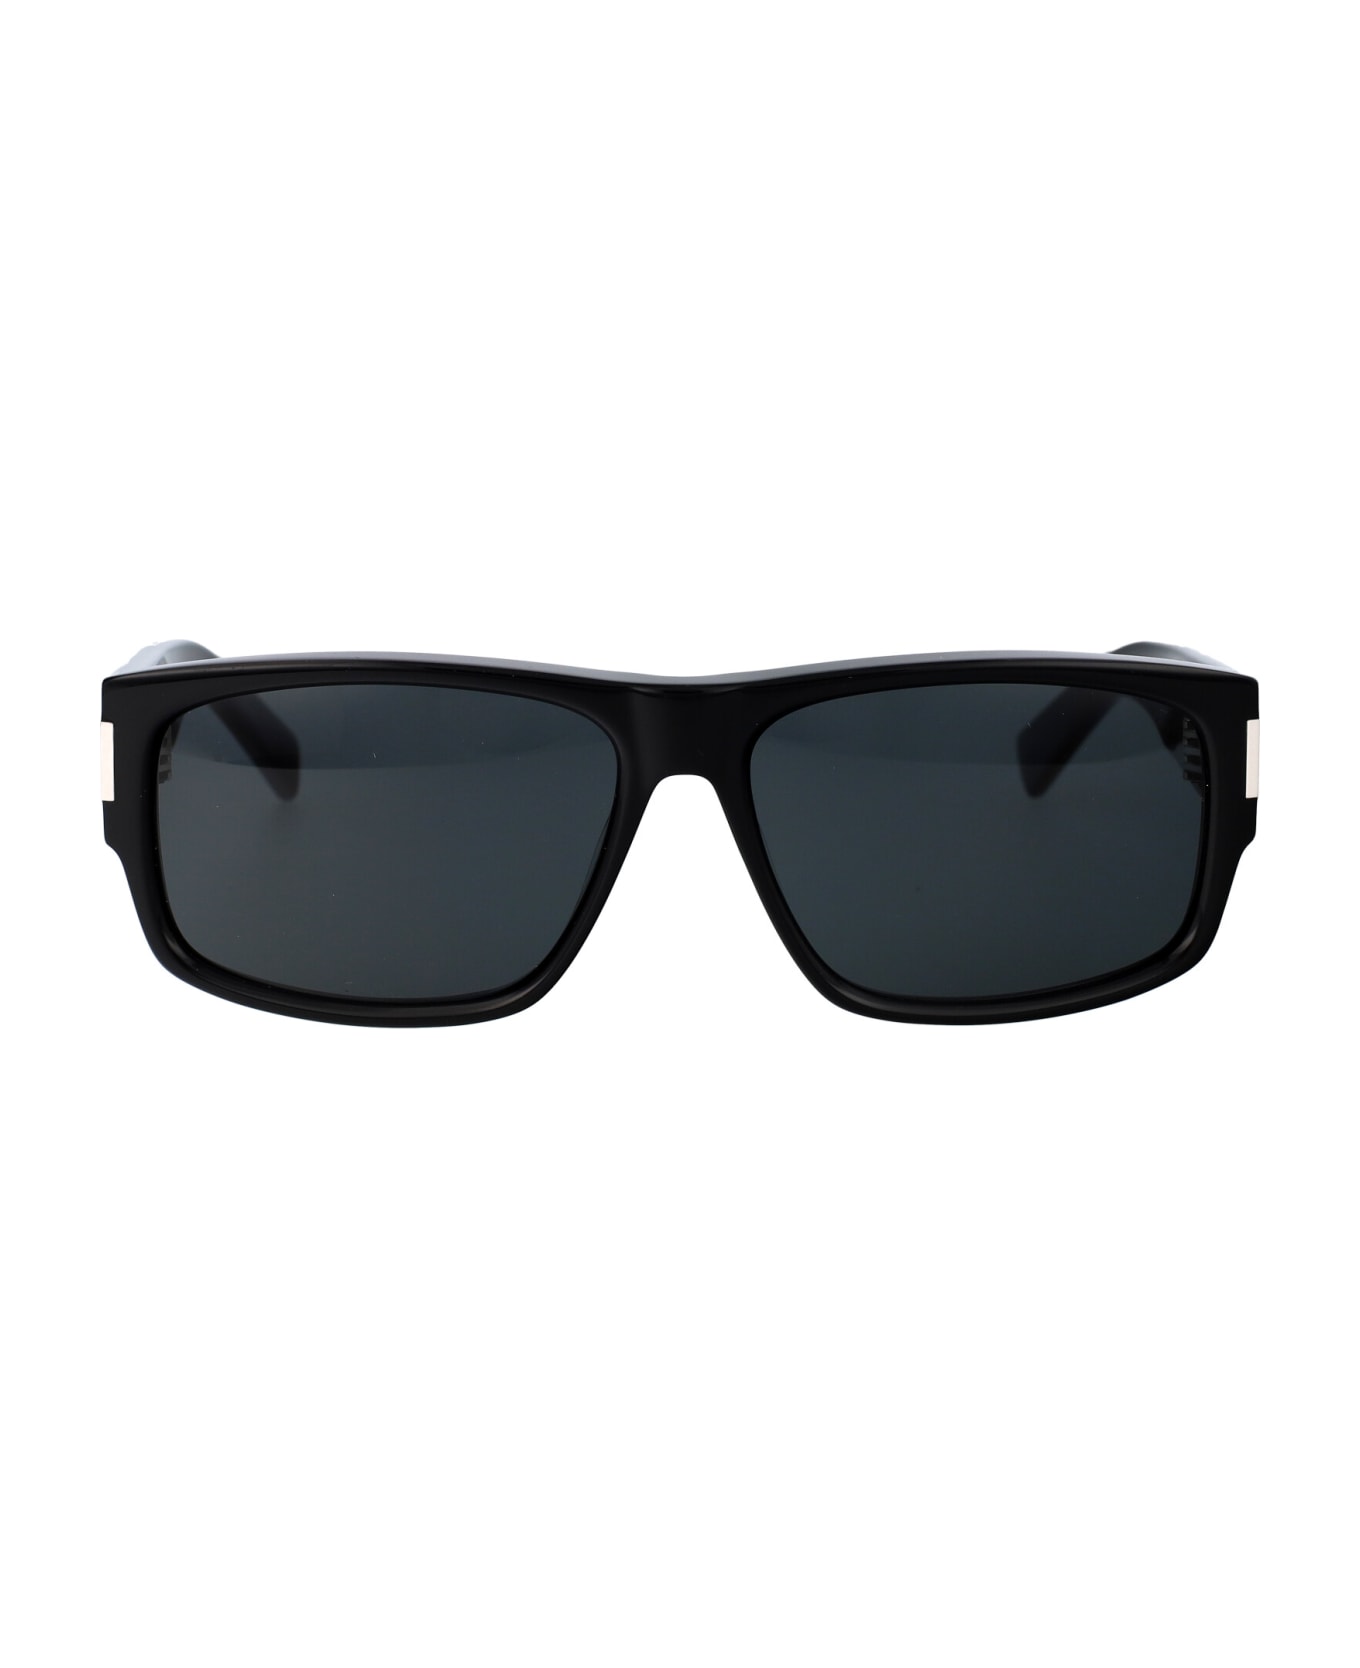 Saint Laurent Eyewear Sl 689 Sunglasses - 001 BLACK BLACK BLACK サングラス